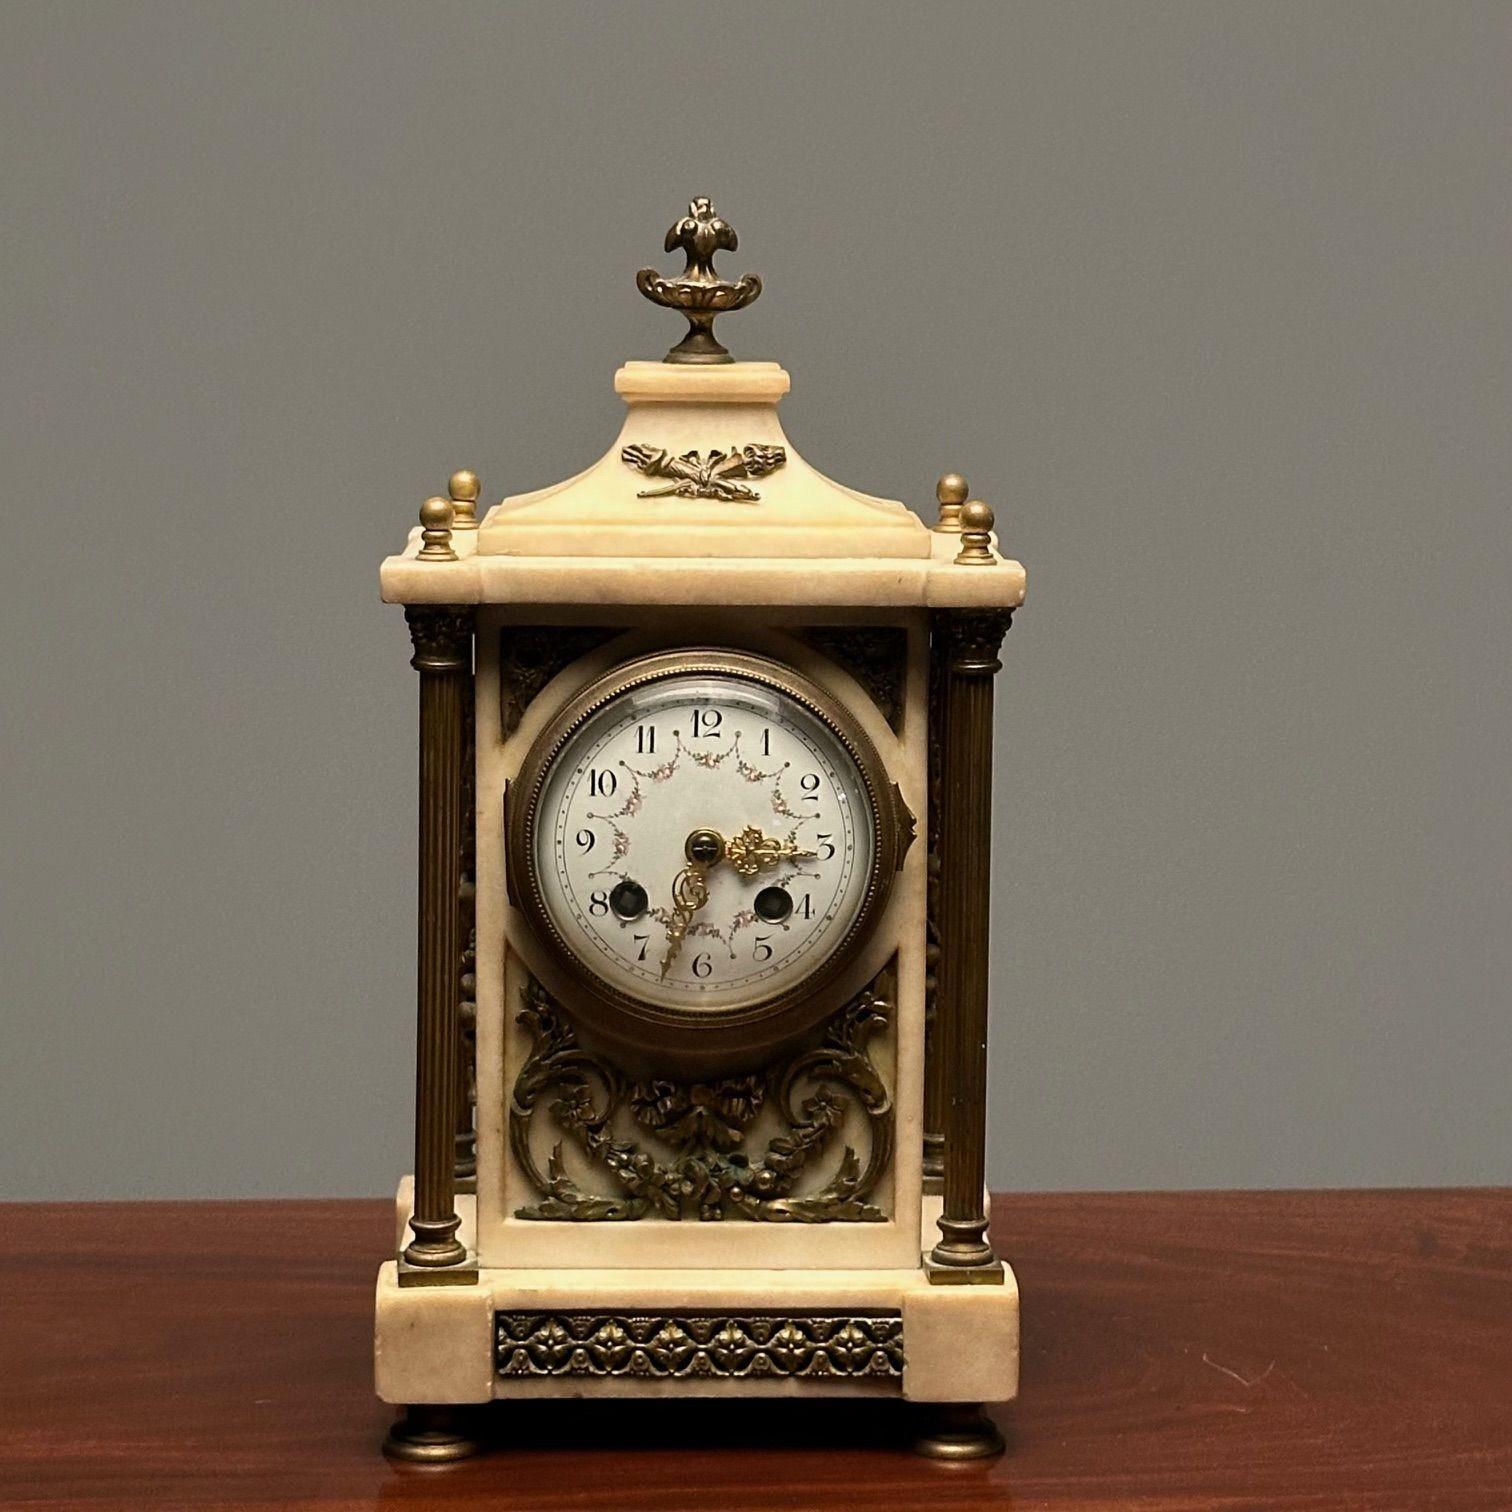 Französische Mantel-, Bügel- oder Tischuhr aus Marmor und Bronze, Frankreich, signiert`

Eine charmante kleine Uhr in Form einer Schatulle aus vergoldeter Bronze und Marmor, funktionstüchtig, vom Künstler signiert und in Frankreich hergestellt, auf